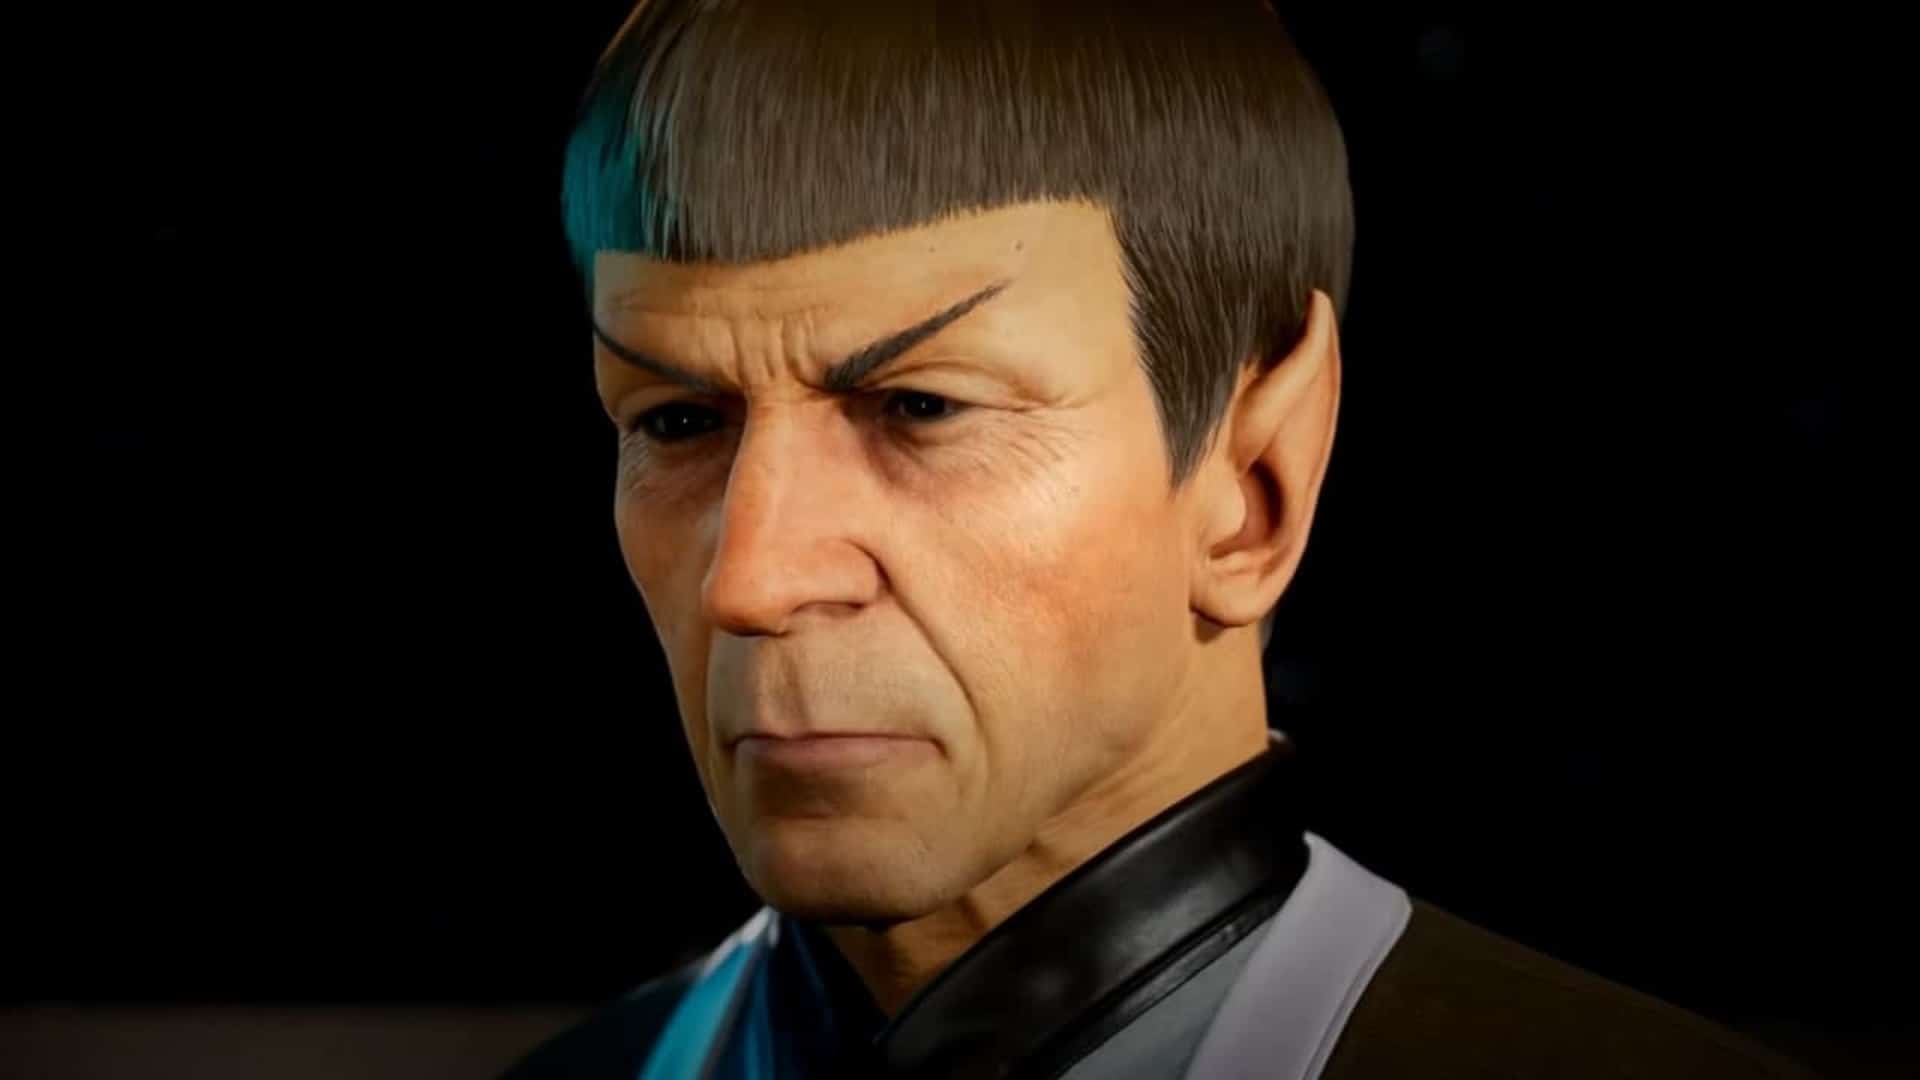 El nuevo gameplay de Star Trek: Resurgence muestra a Spock, GamersRD